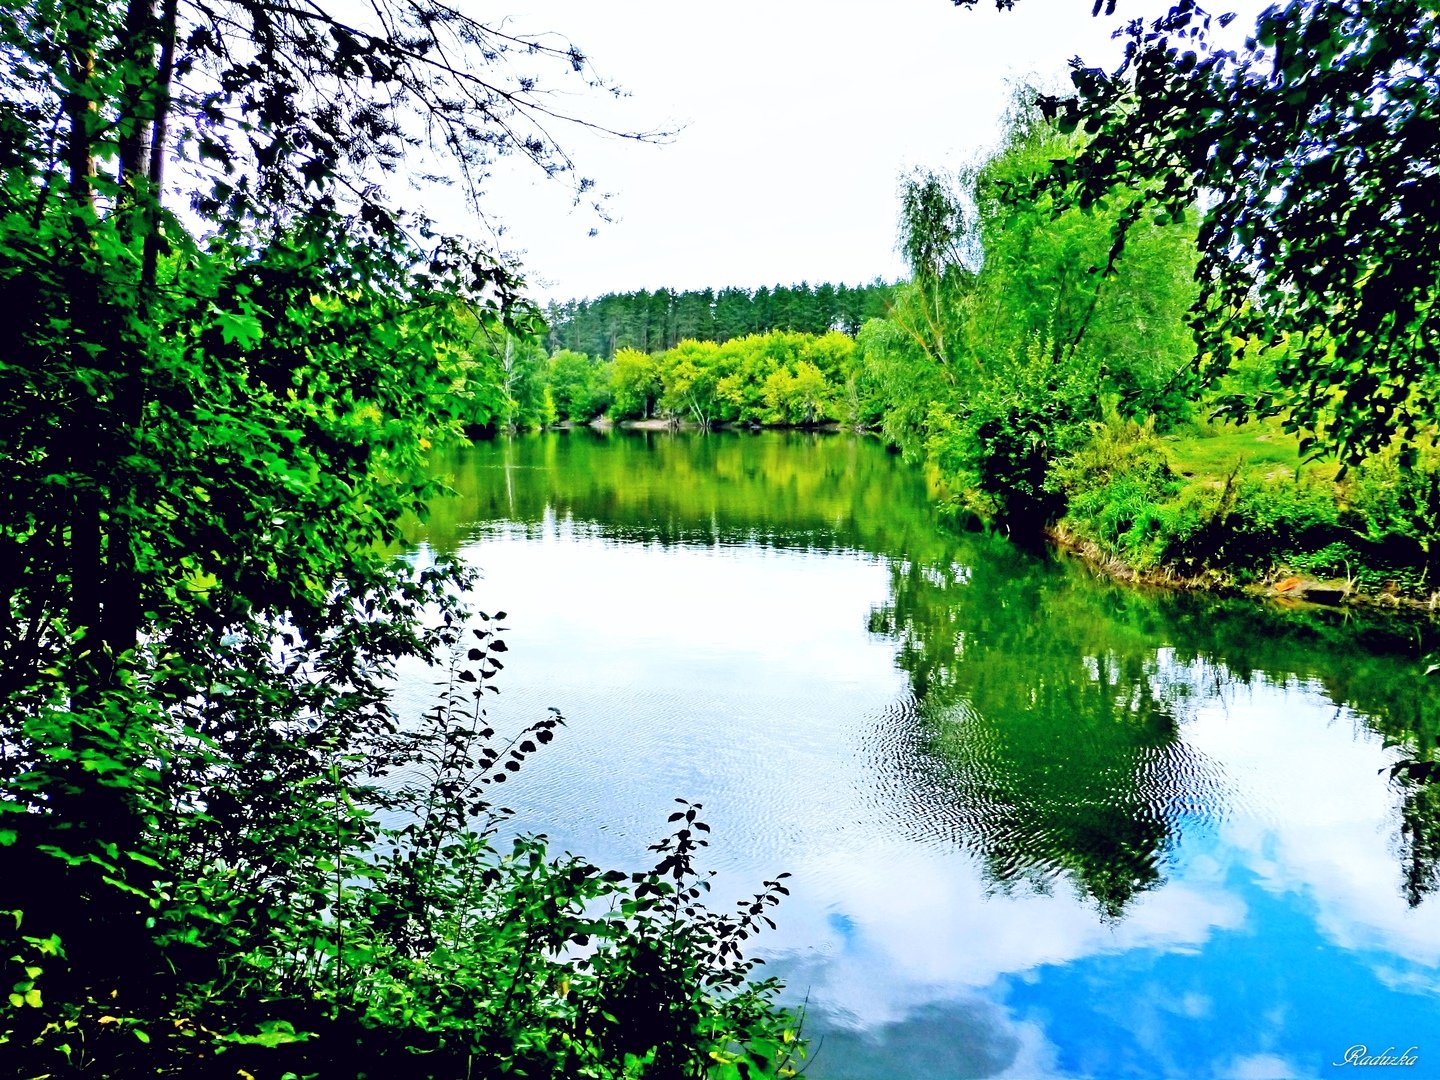 Люблю озера синие. Воронцова, озёра синие. Гляжу в озера синие. Синь озеро. Фотоконкурс гляжу в озера синие.